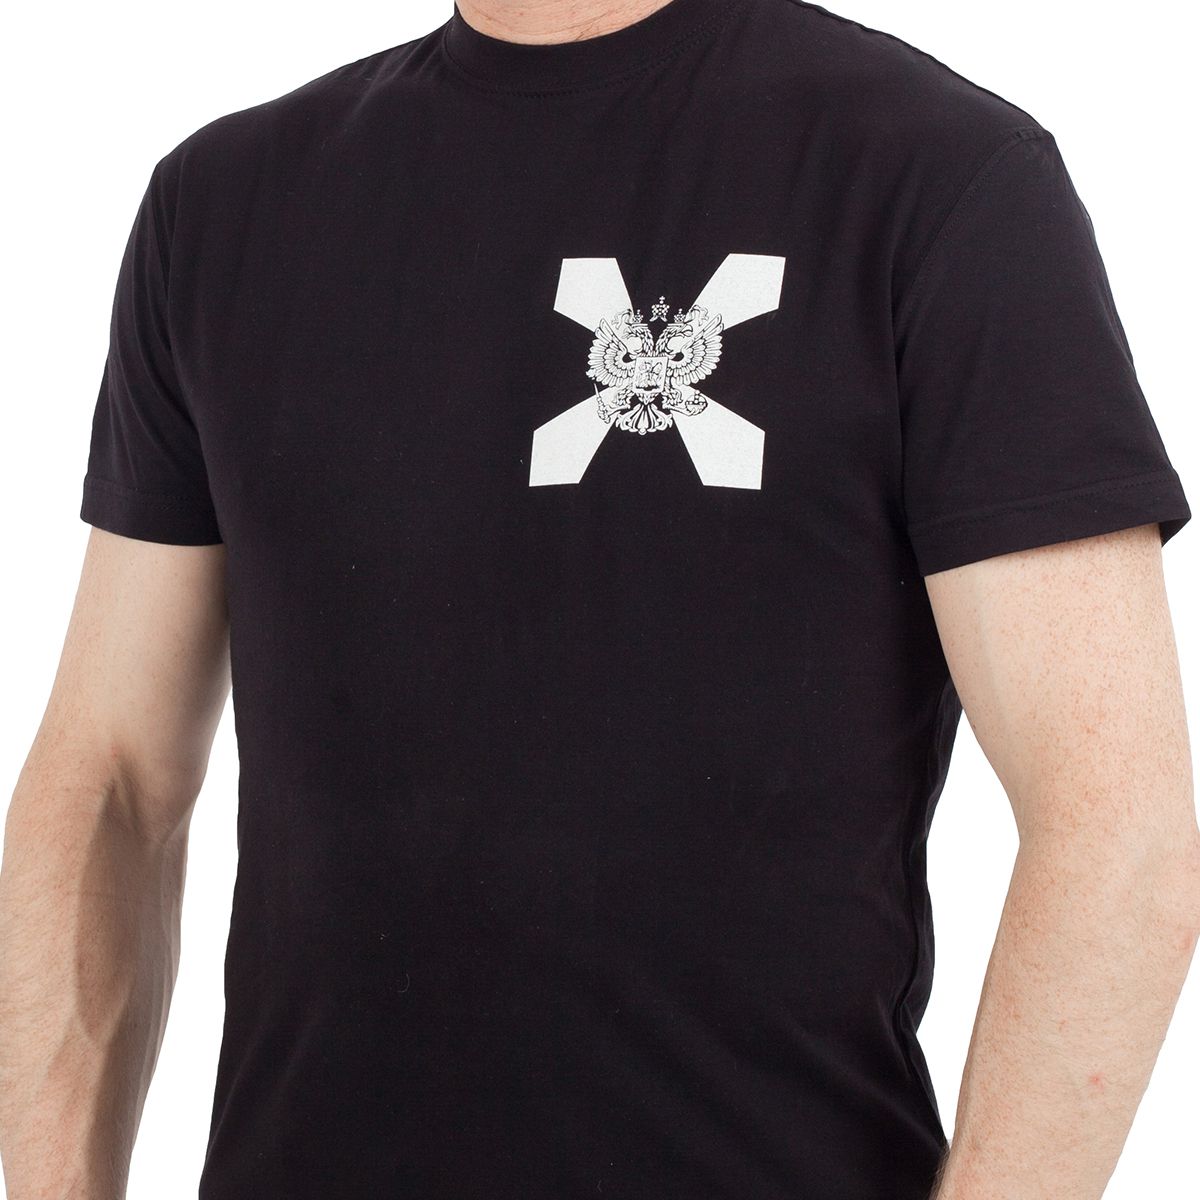 Военная футболка «Внутренние Войска» – качество и дизайн такие же приятные, как и цена. ЛЮТЫЕ СКИДКИ! №45, ОСТАТКИ СЛАДКИ!!!!